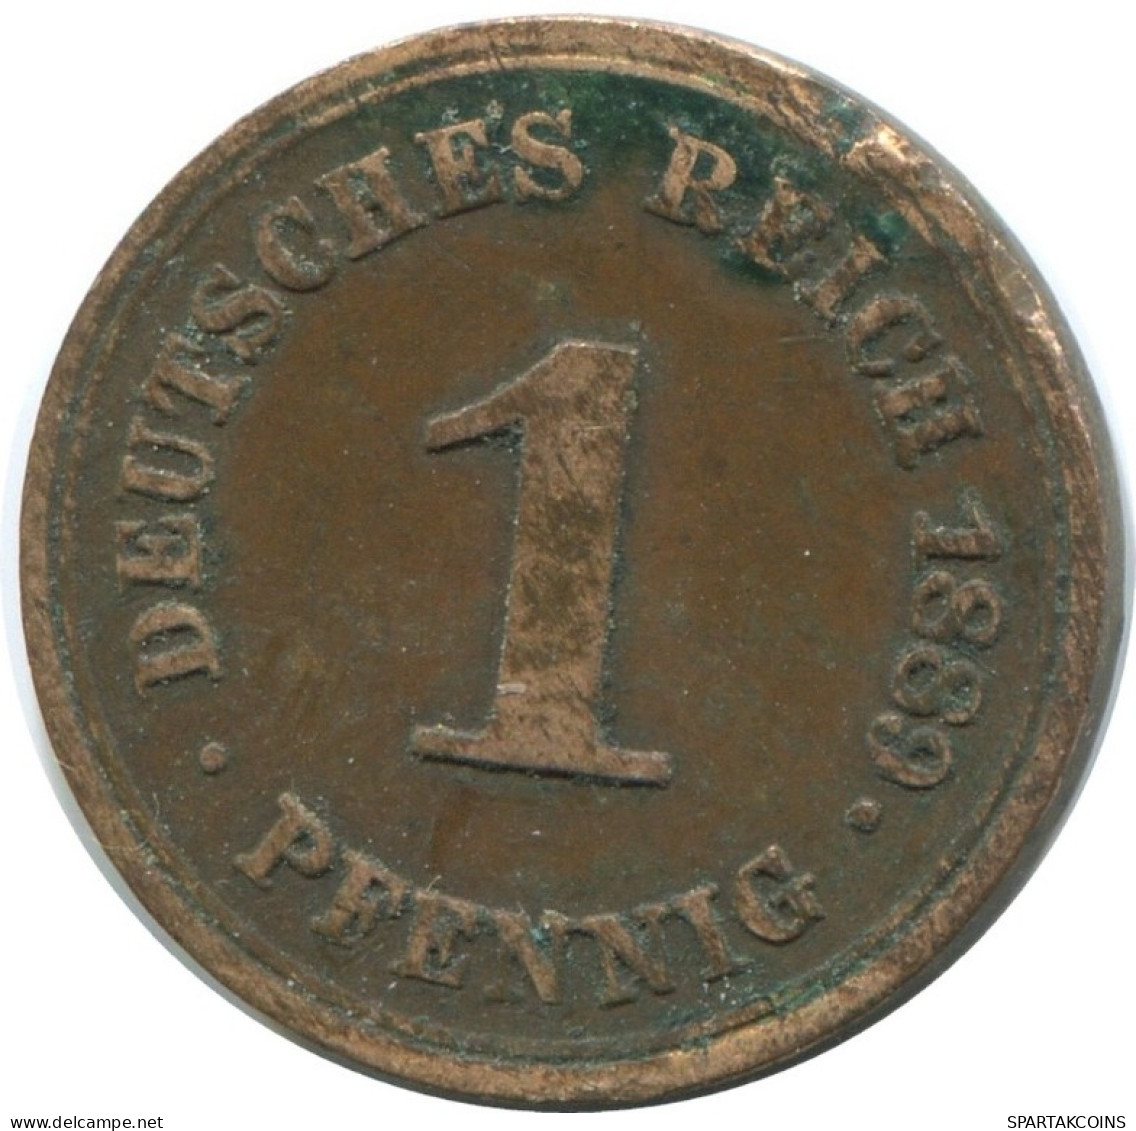 1 PFENNIG 1889 F GERMANY Coin #AD443.9.U.A - 1 Pfennig